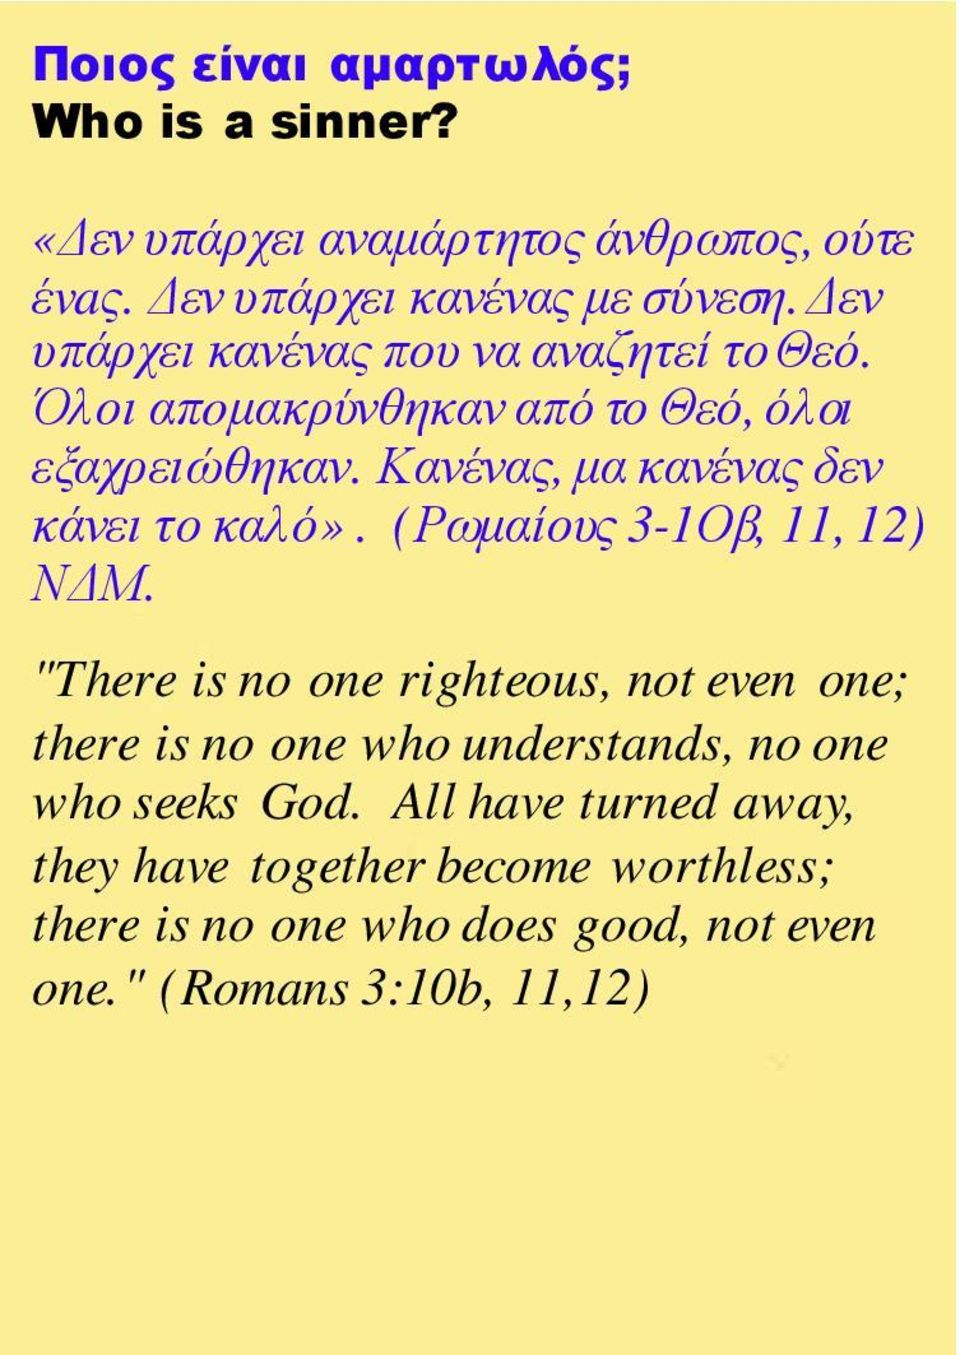 Κανένας, µα κανένας δεν κάνει το καλό». (Ρωµαίους 3-1Οβ, 11, 12) Ν Μ.